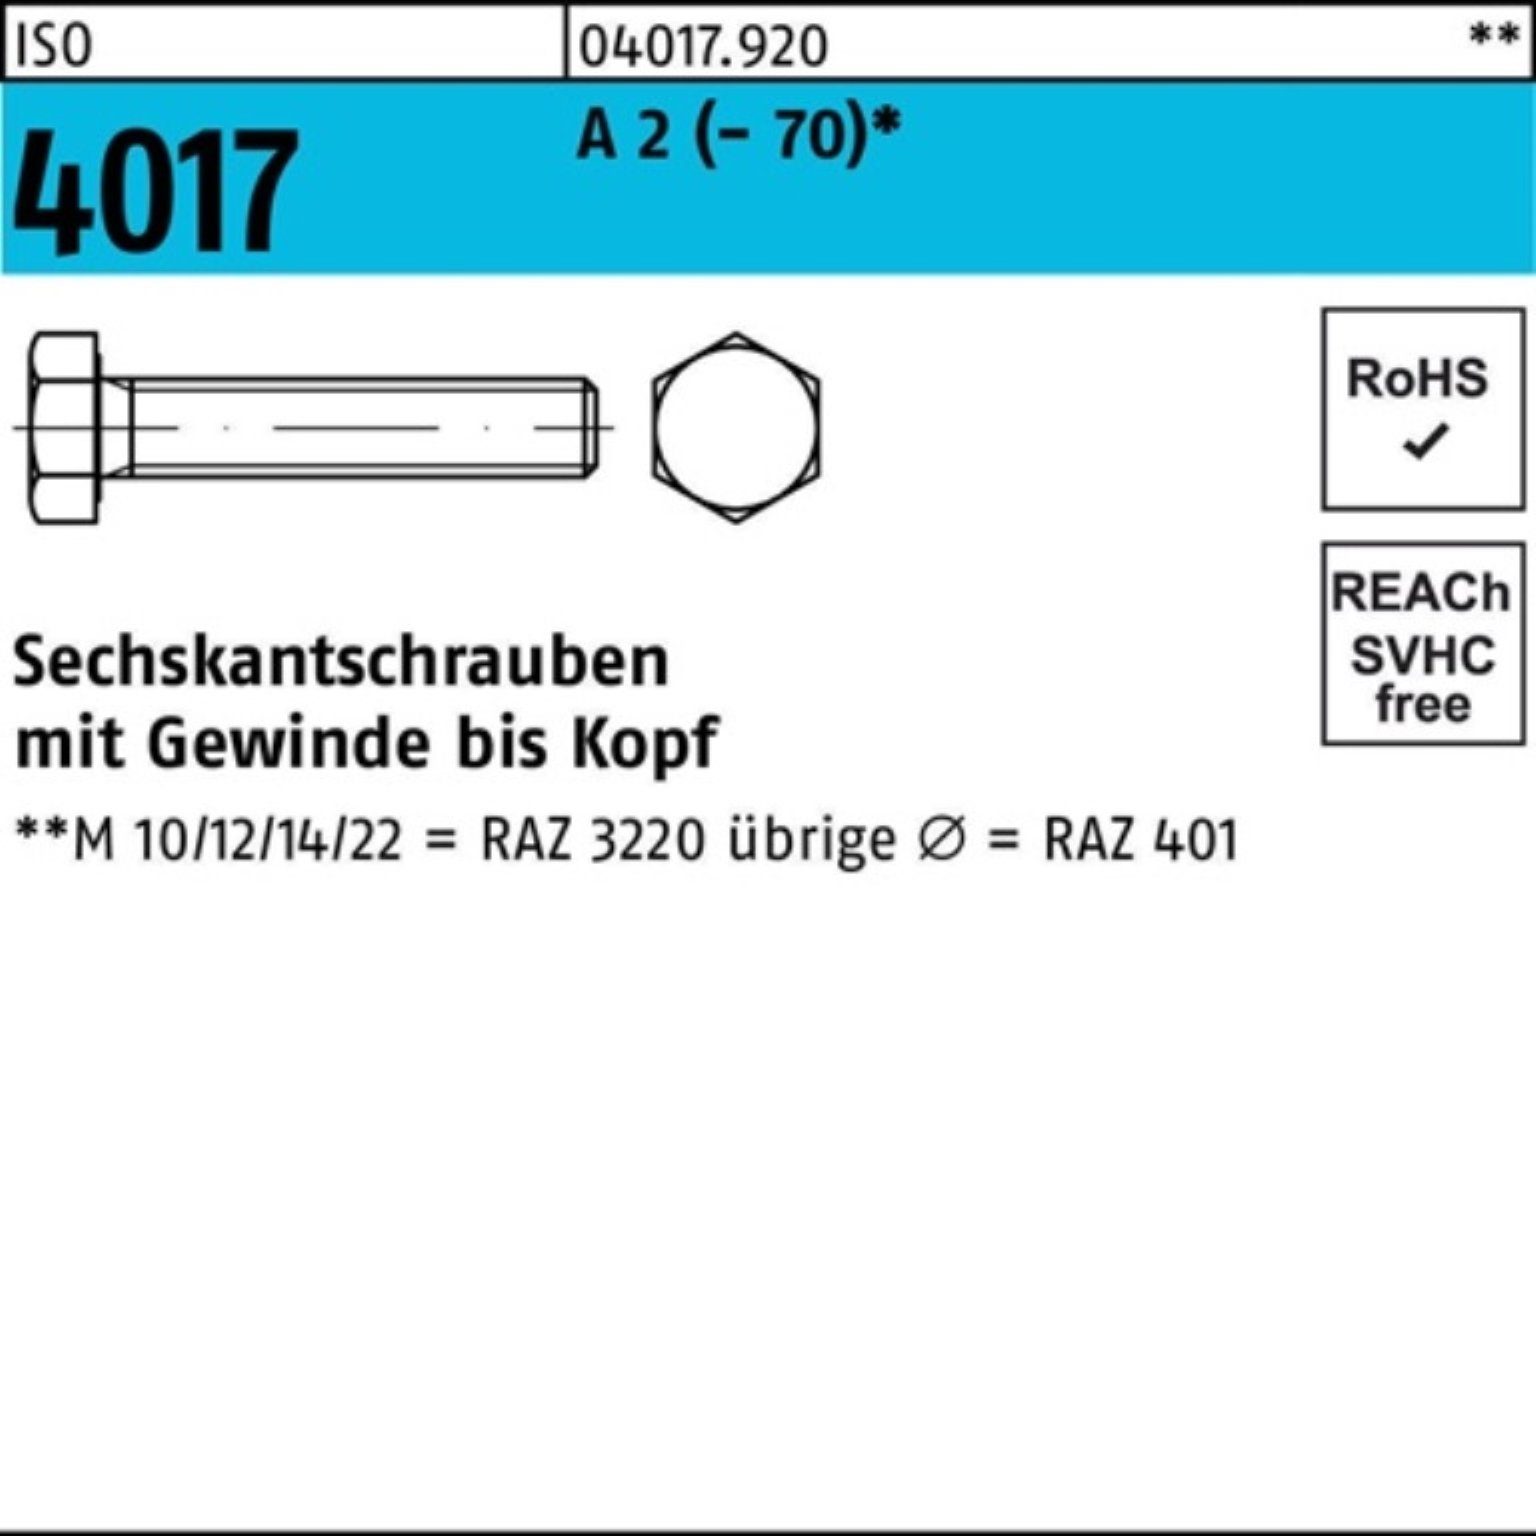 Bufab Sechskantschraube 200er Pack Sechskantschraube ISO 4017 VG M5x 50 A 2 (70) 200 Stück